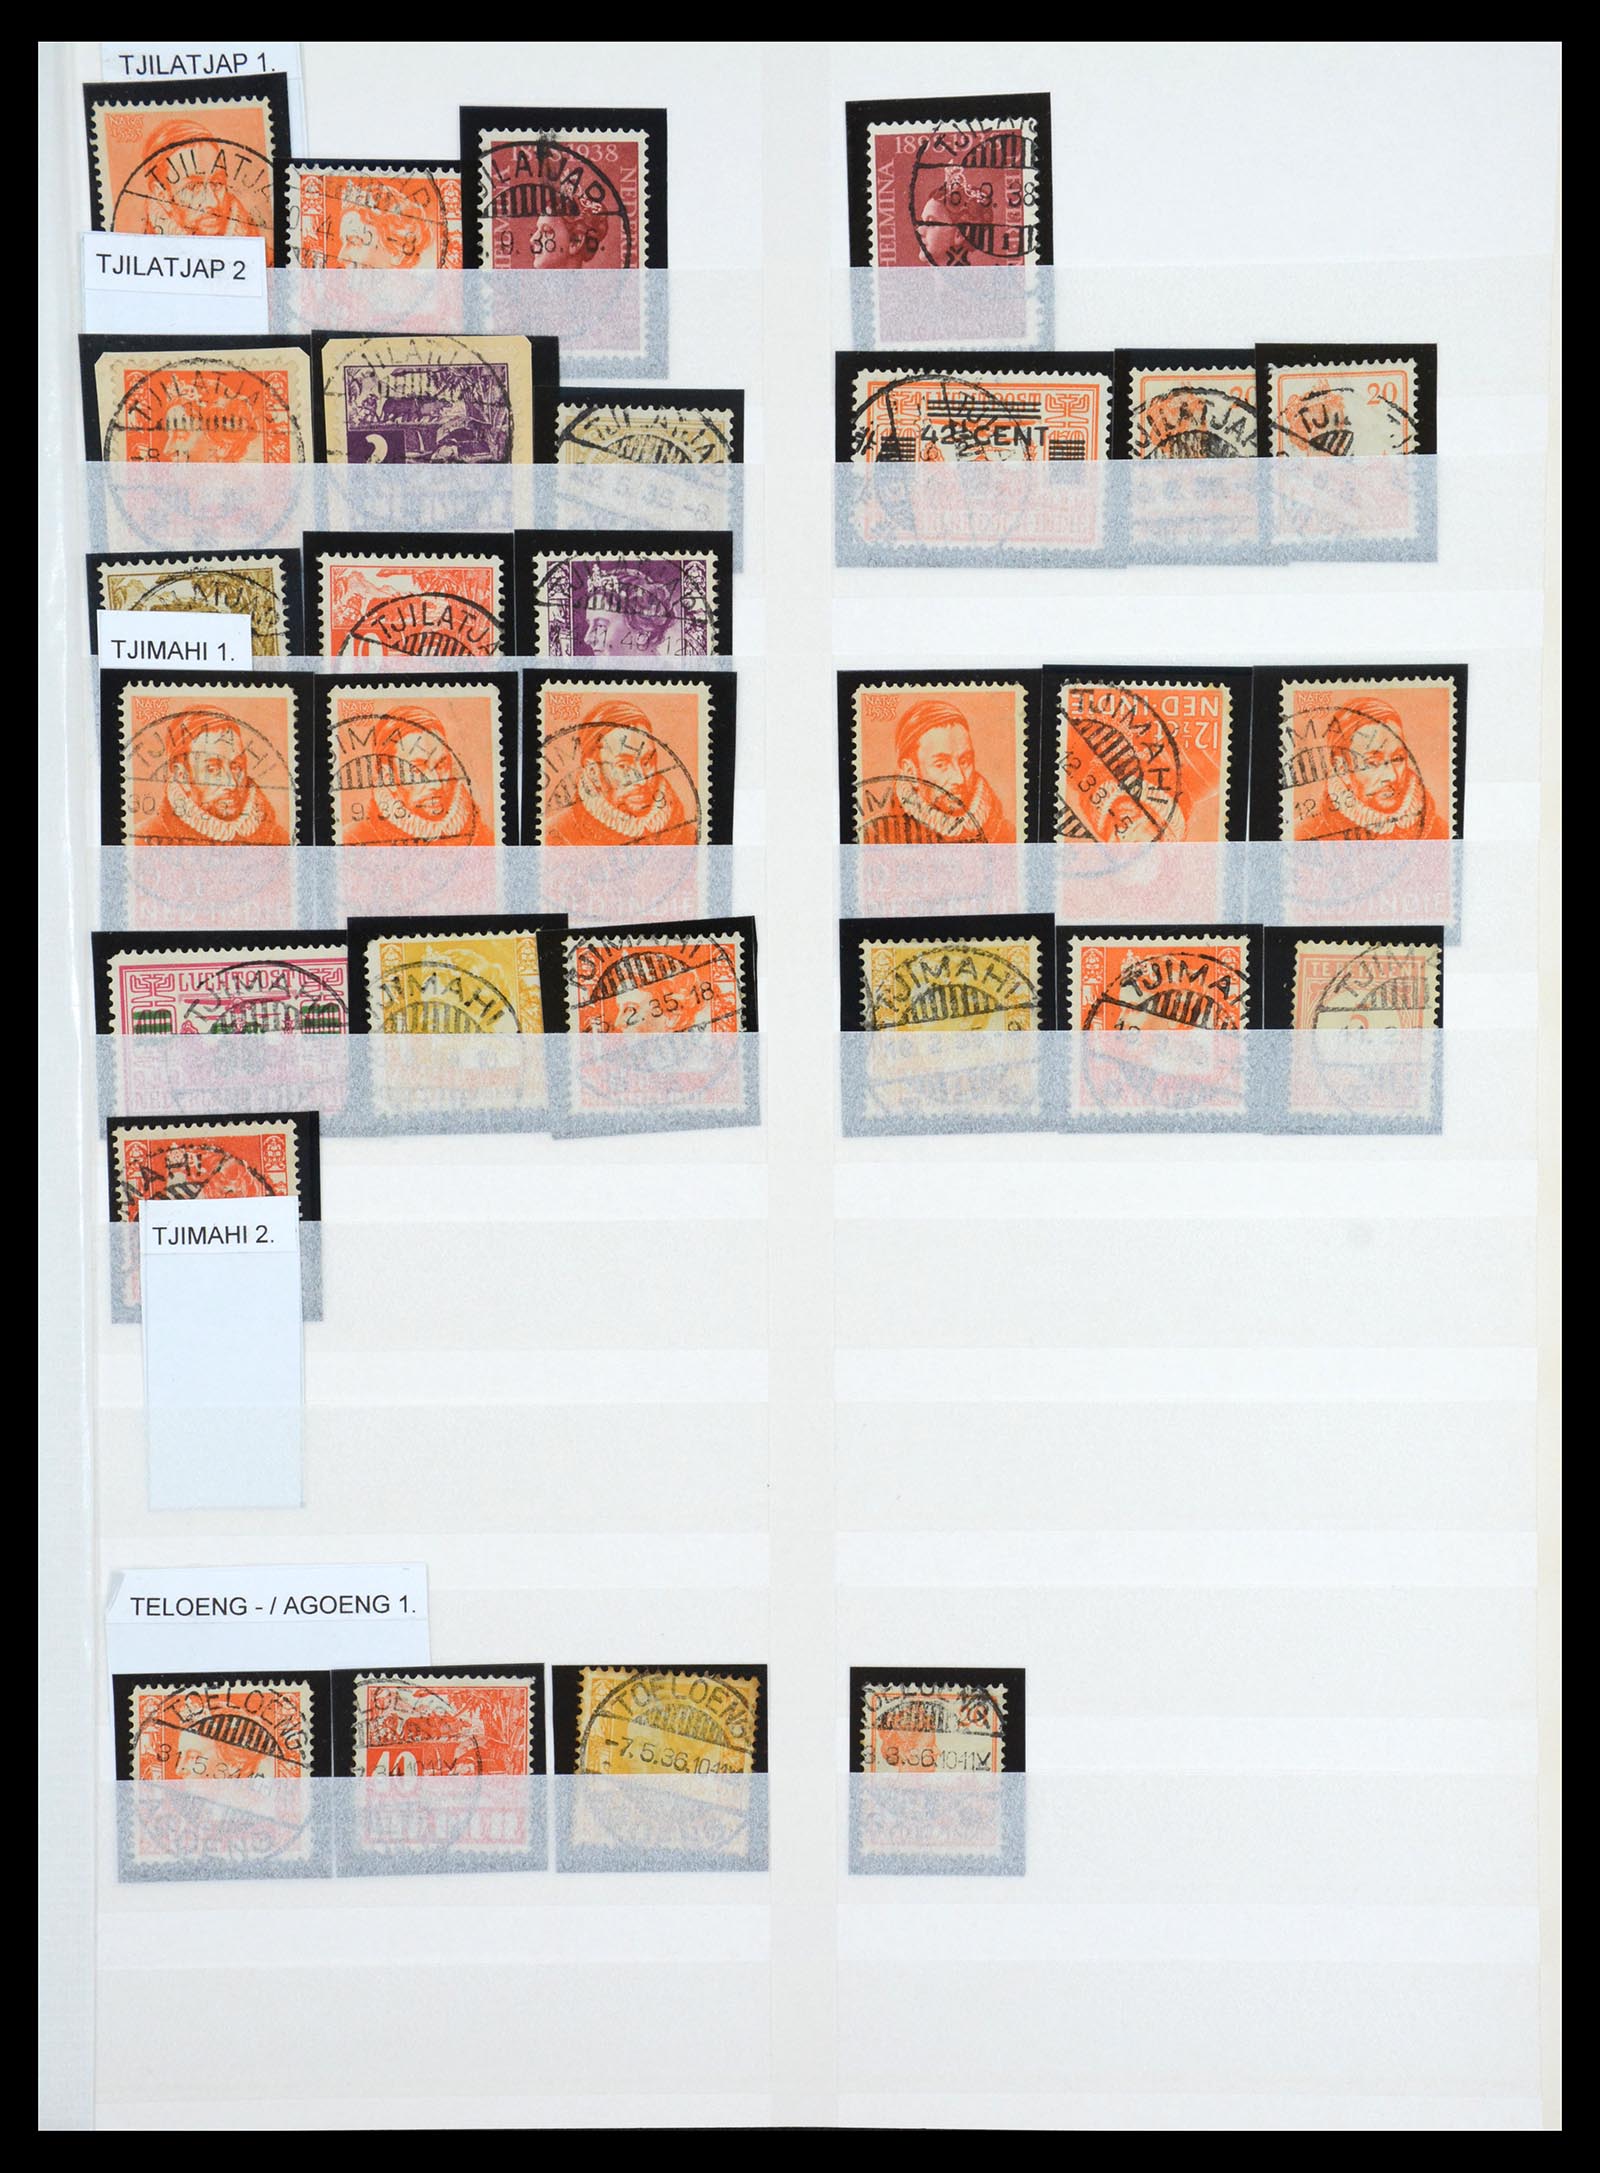 36617 023 - Stamp collection 36617 Nederlands Indië stempels.